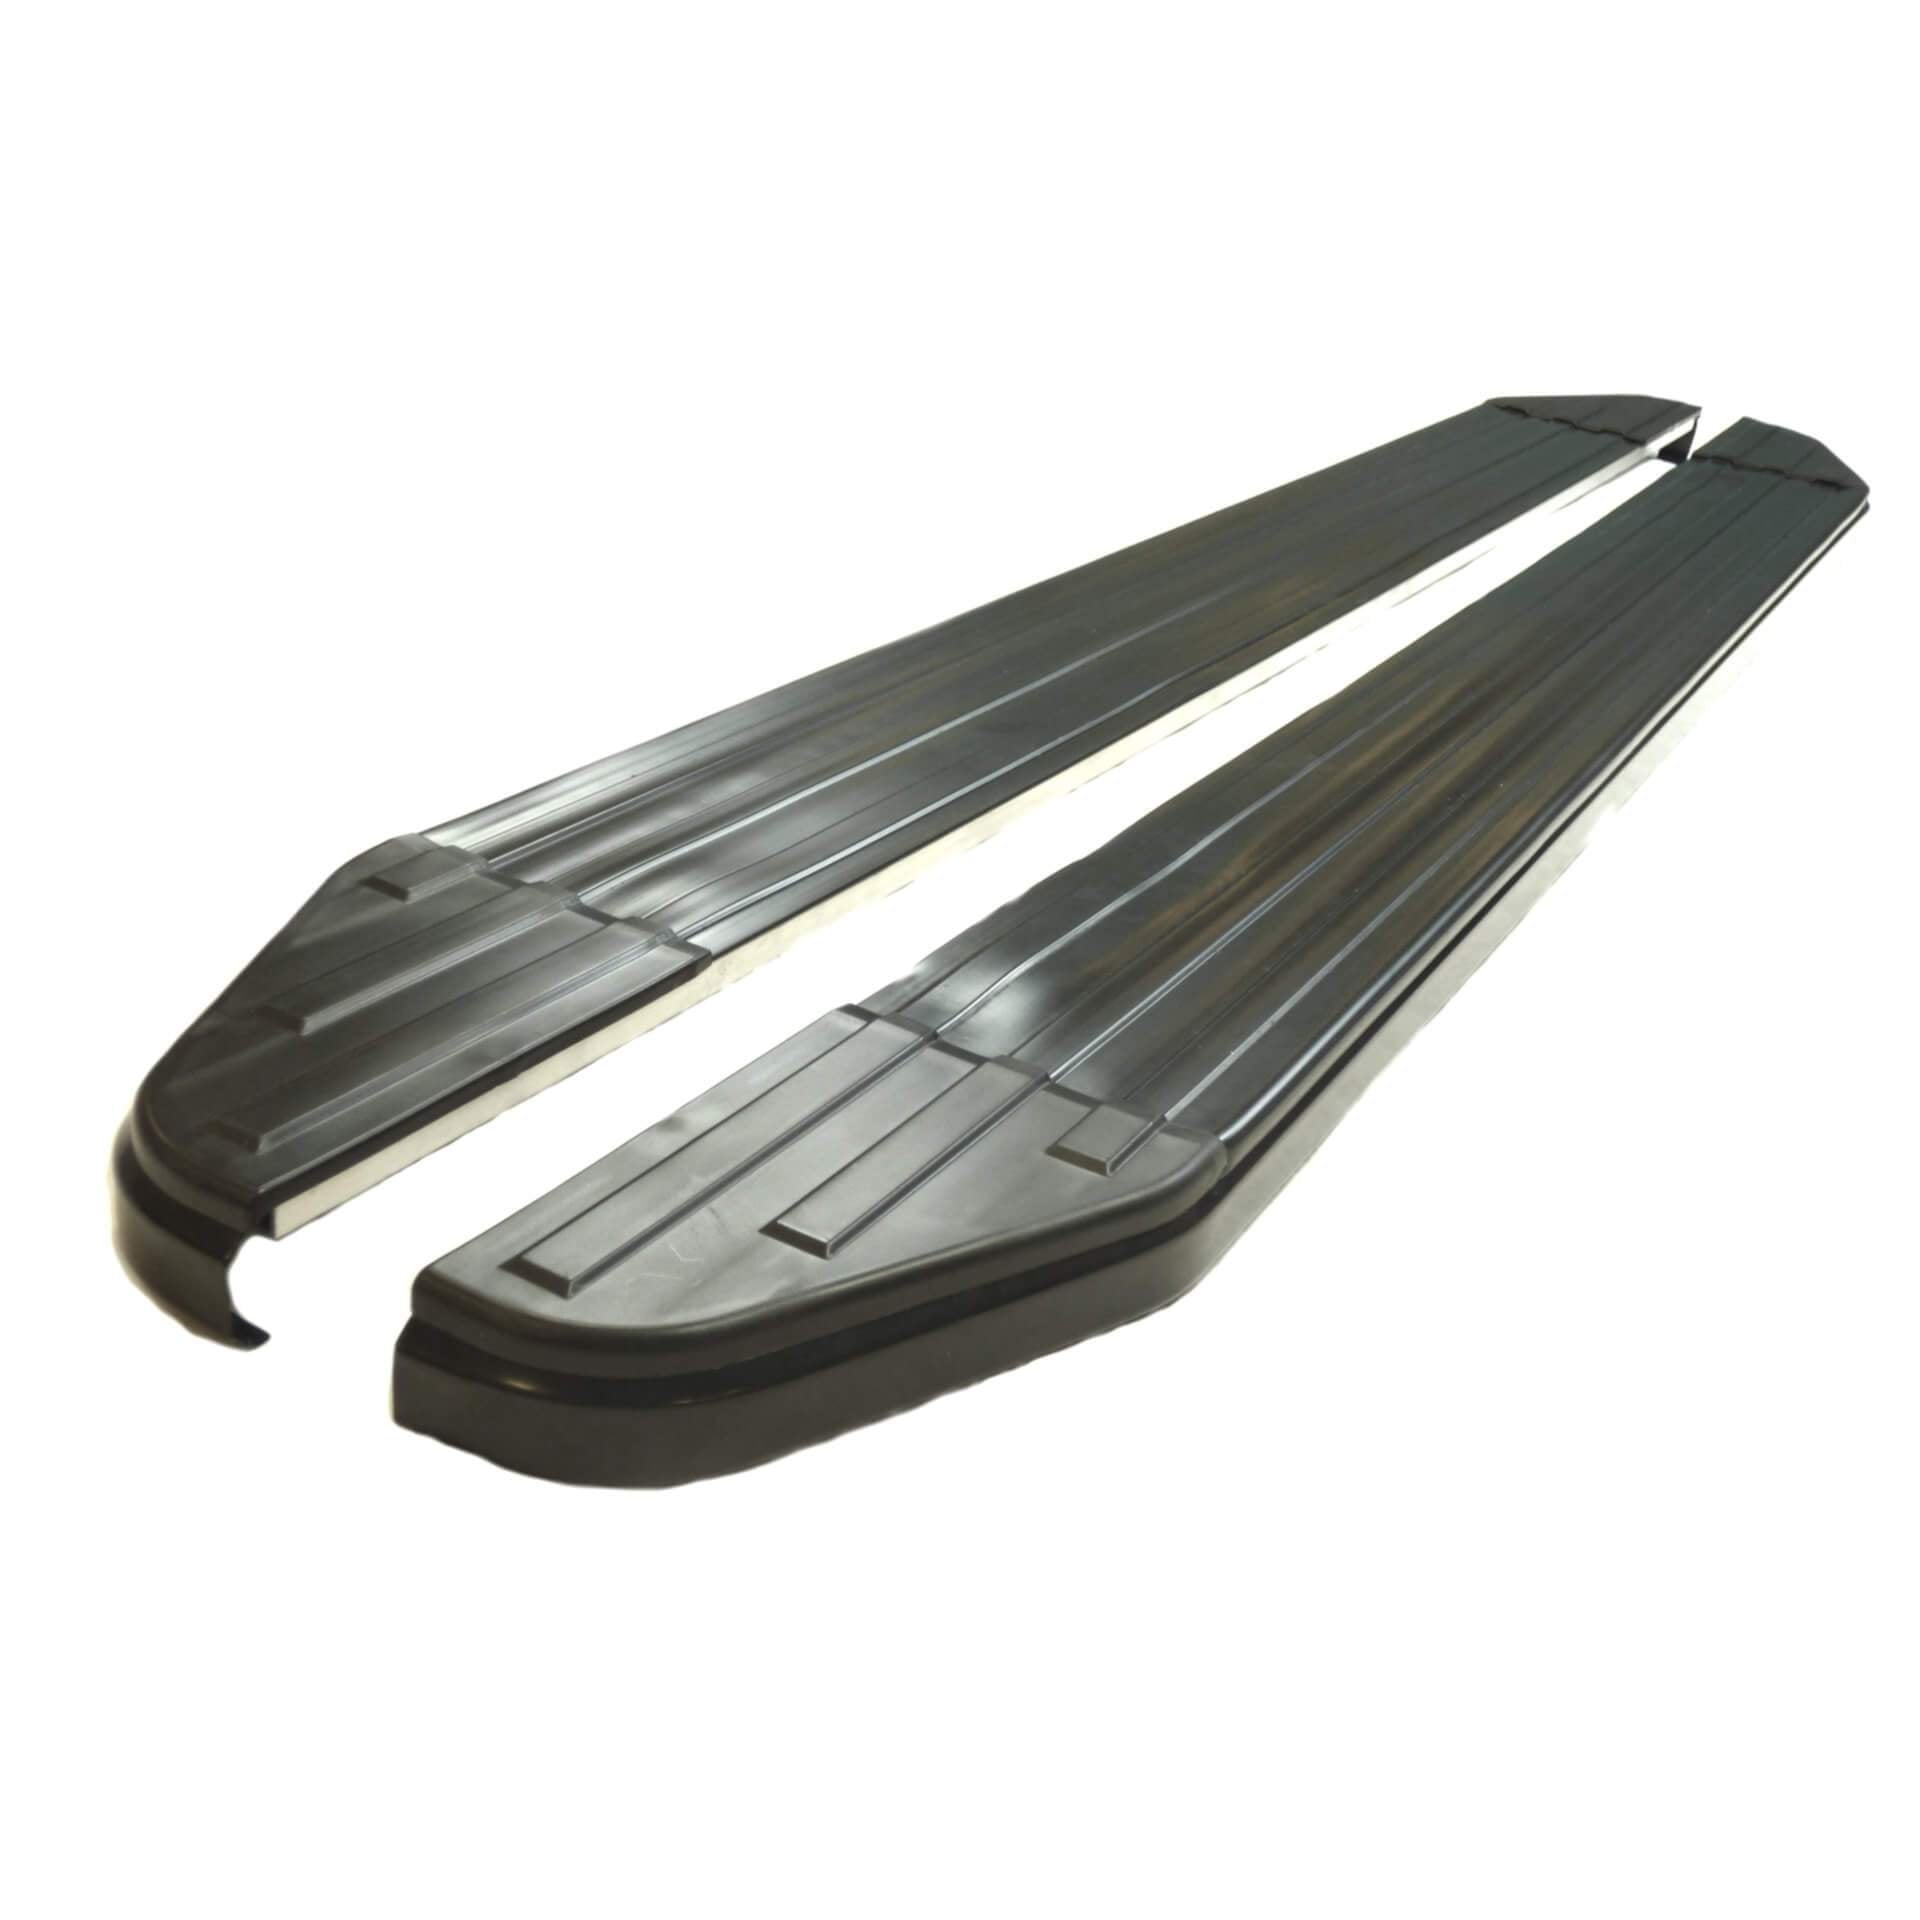 Black Raptor Side Steps Running Boards for Nissan Pathfinder 2005-2012 -  - sold by Direct4x4